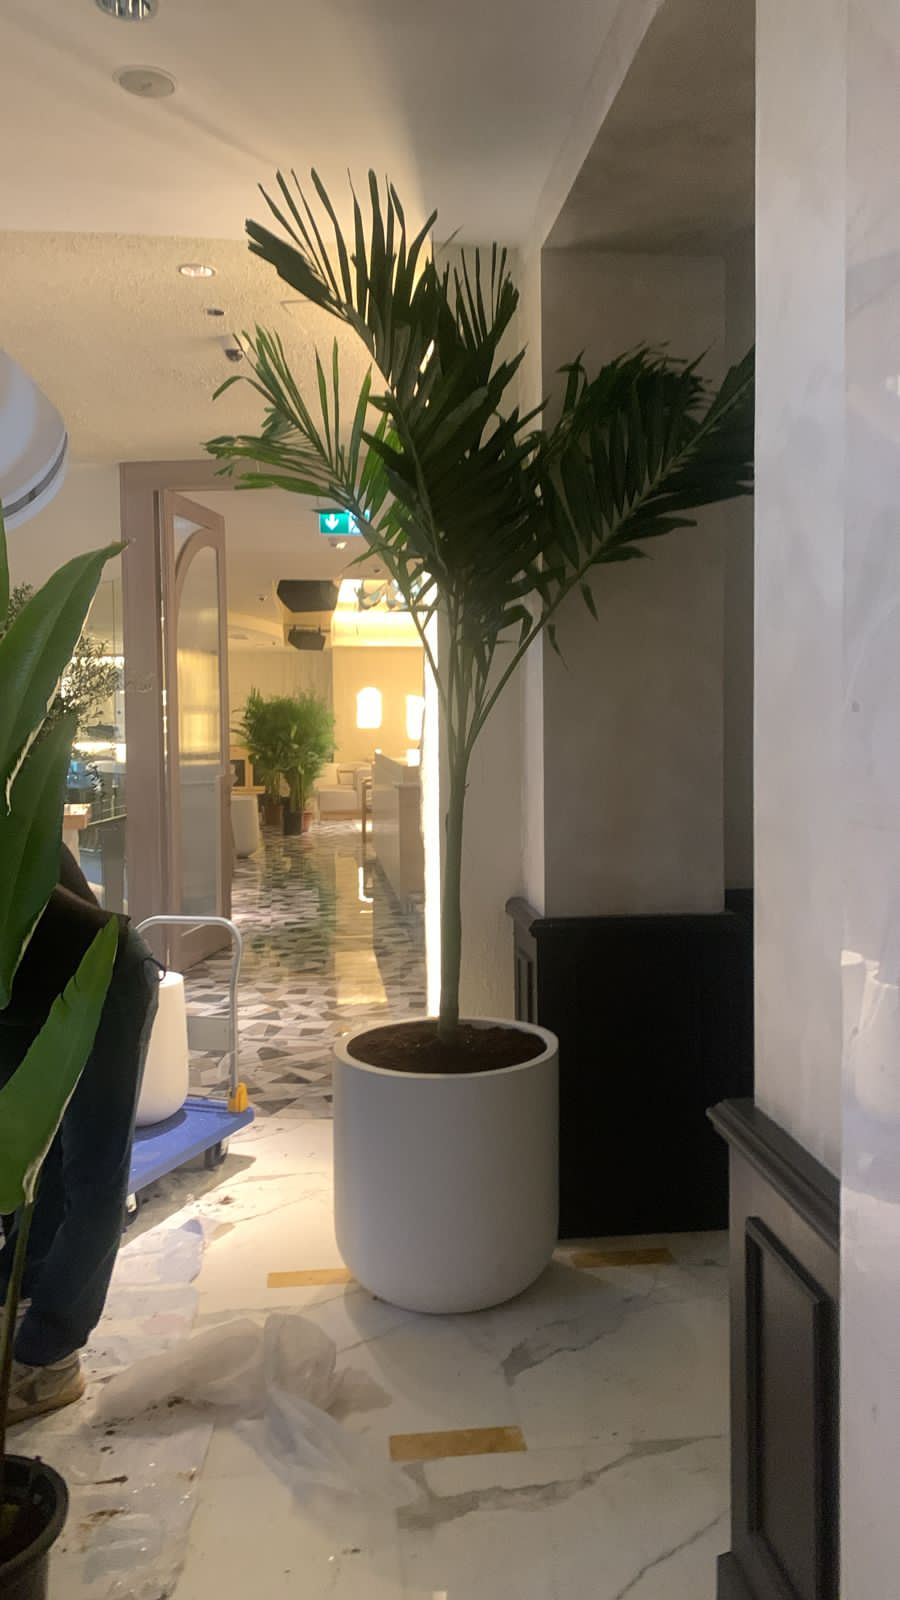 Vietchia Palm Indoor In Fiber Pot 2.5m to 3m